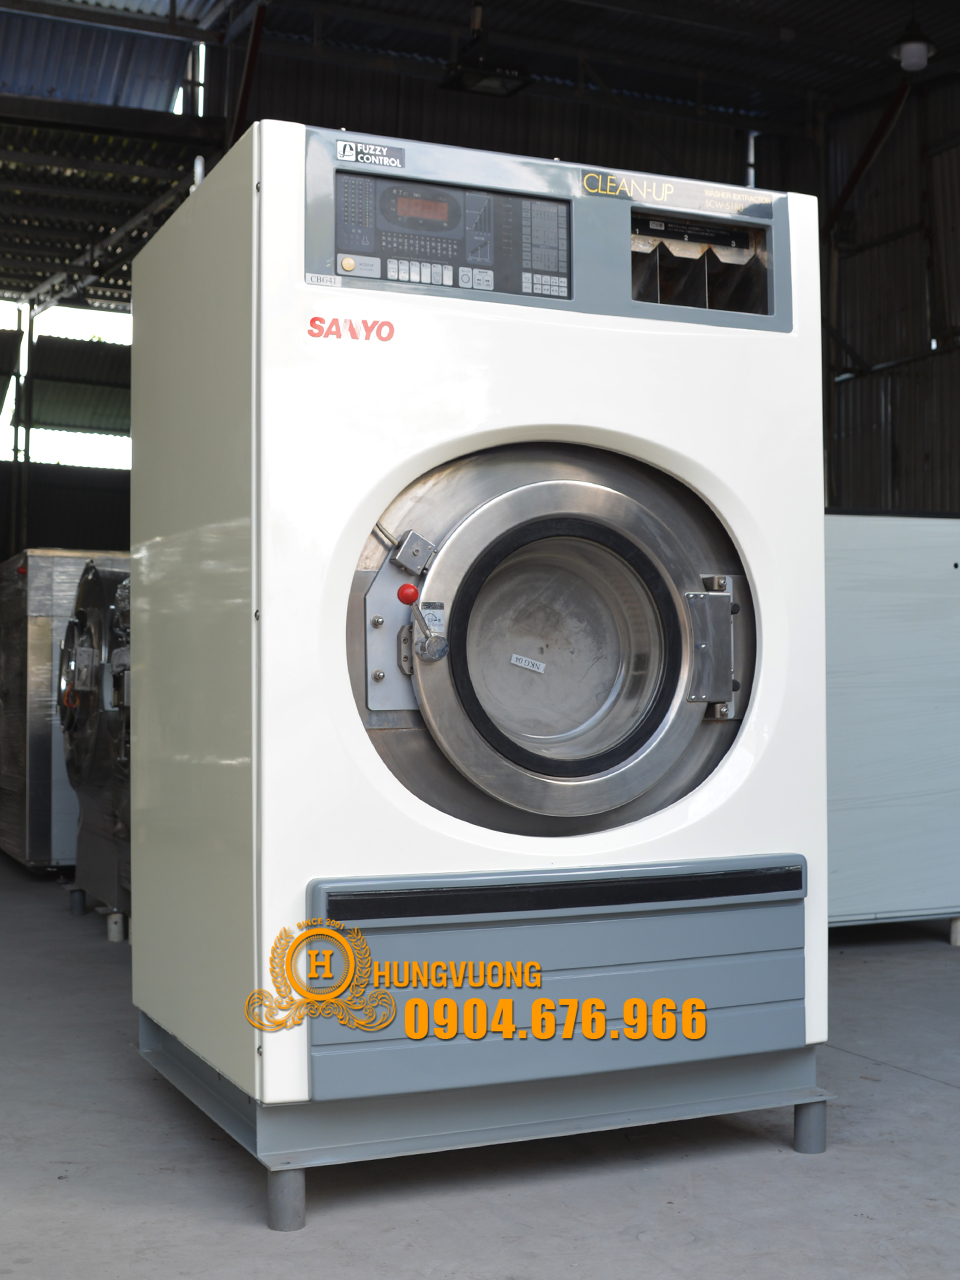 Mặt nghiêng máy giặt công nghiệp SANYO SCW 5180, 18kg, chân chống rung, biến tần, Nhật Bản